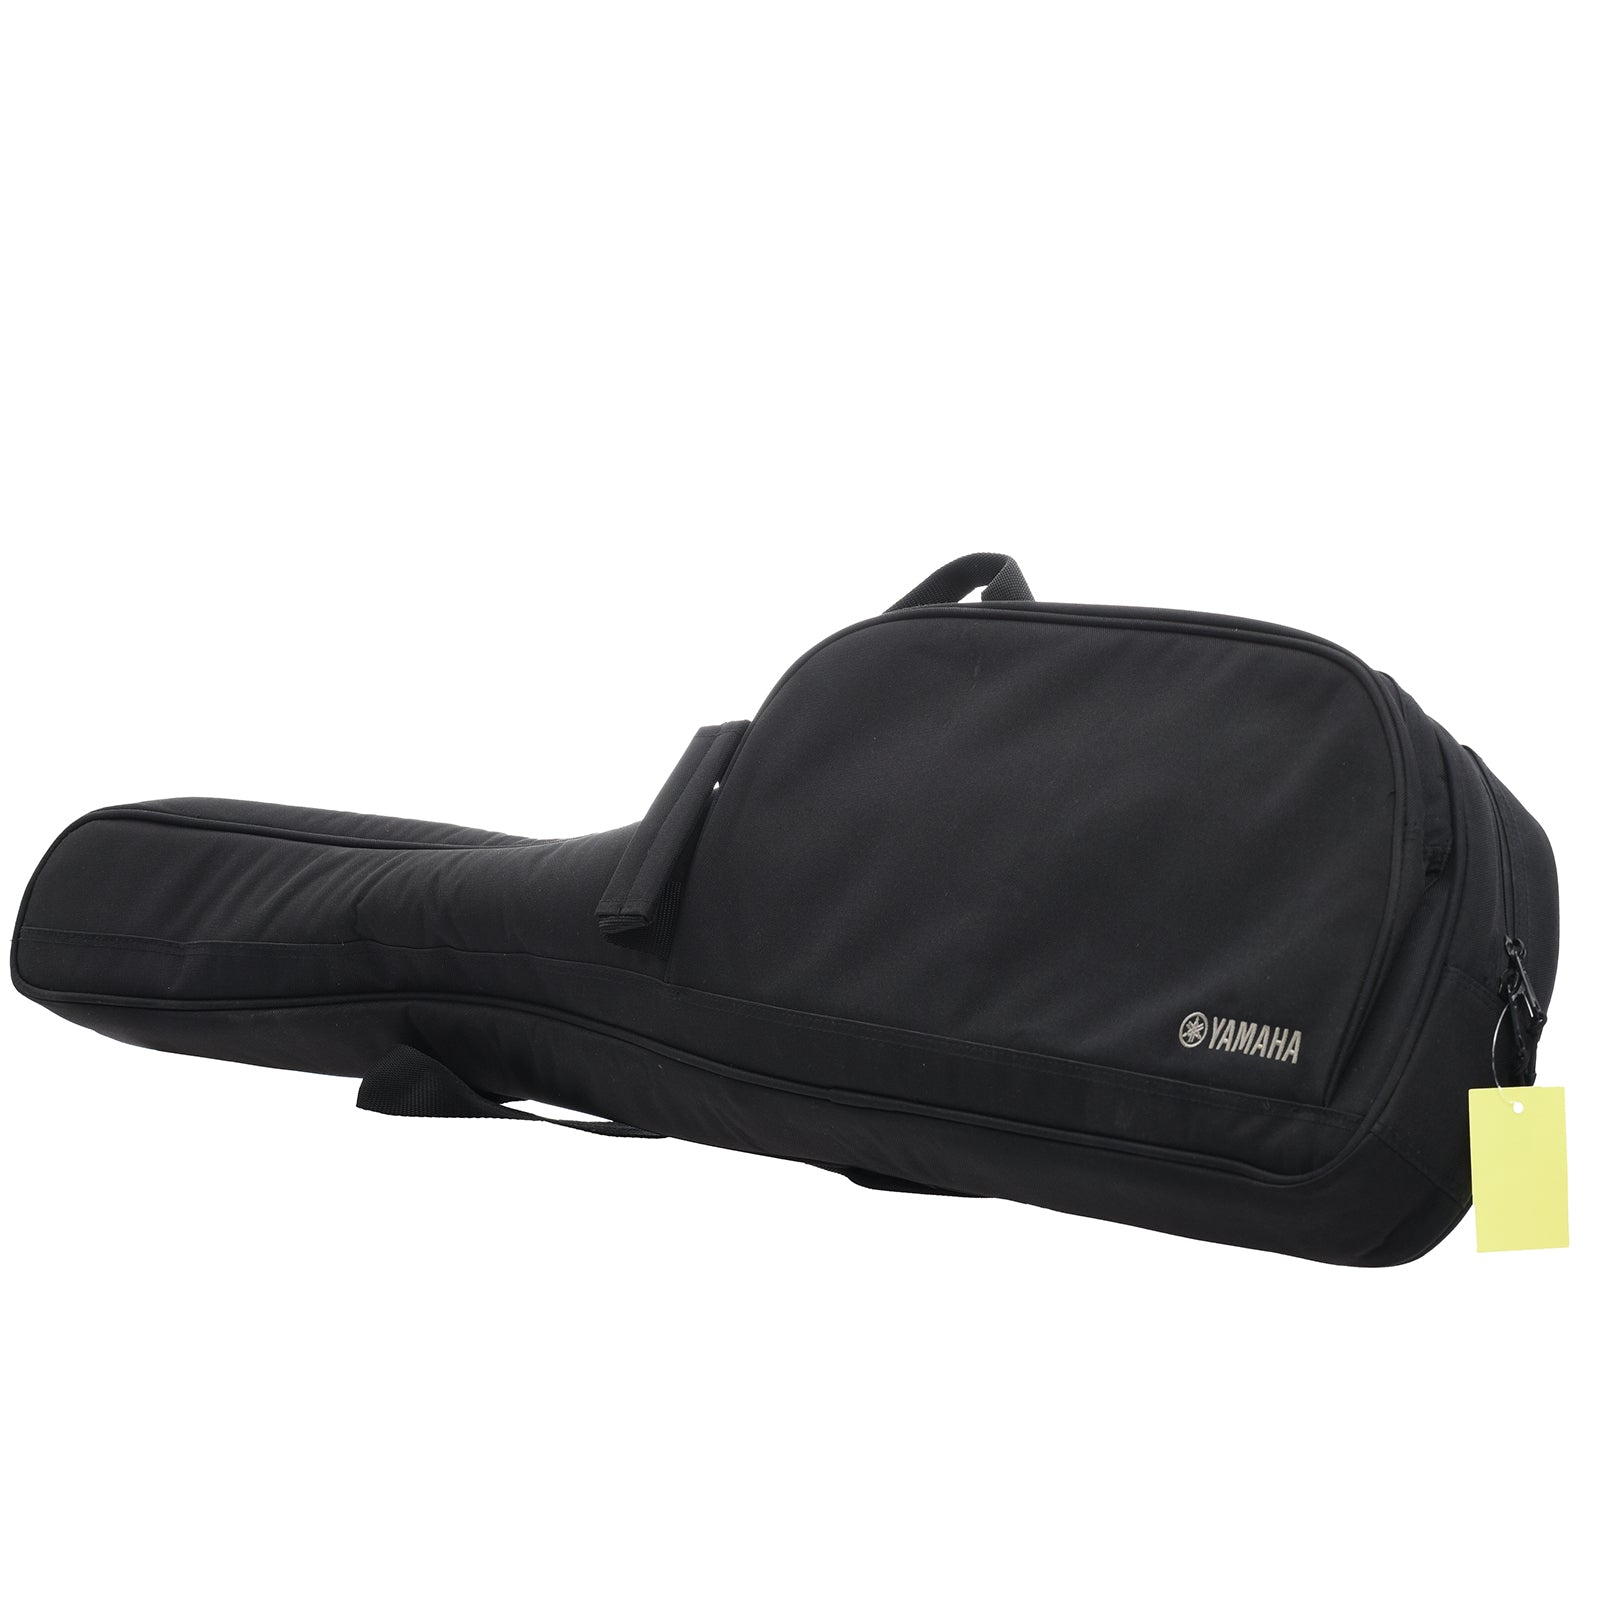 Gig bag for Yamaha SLG200S NT Silent Guitar (2022)